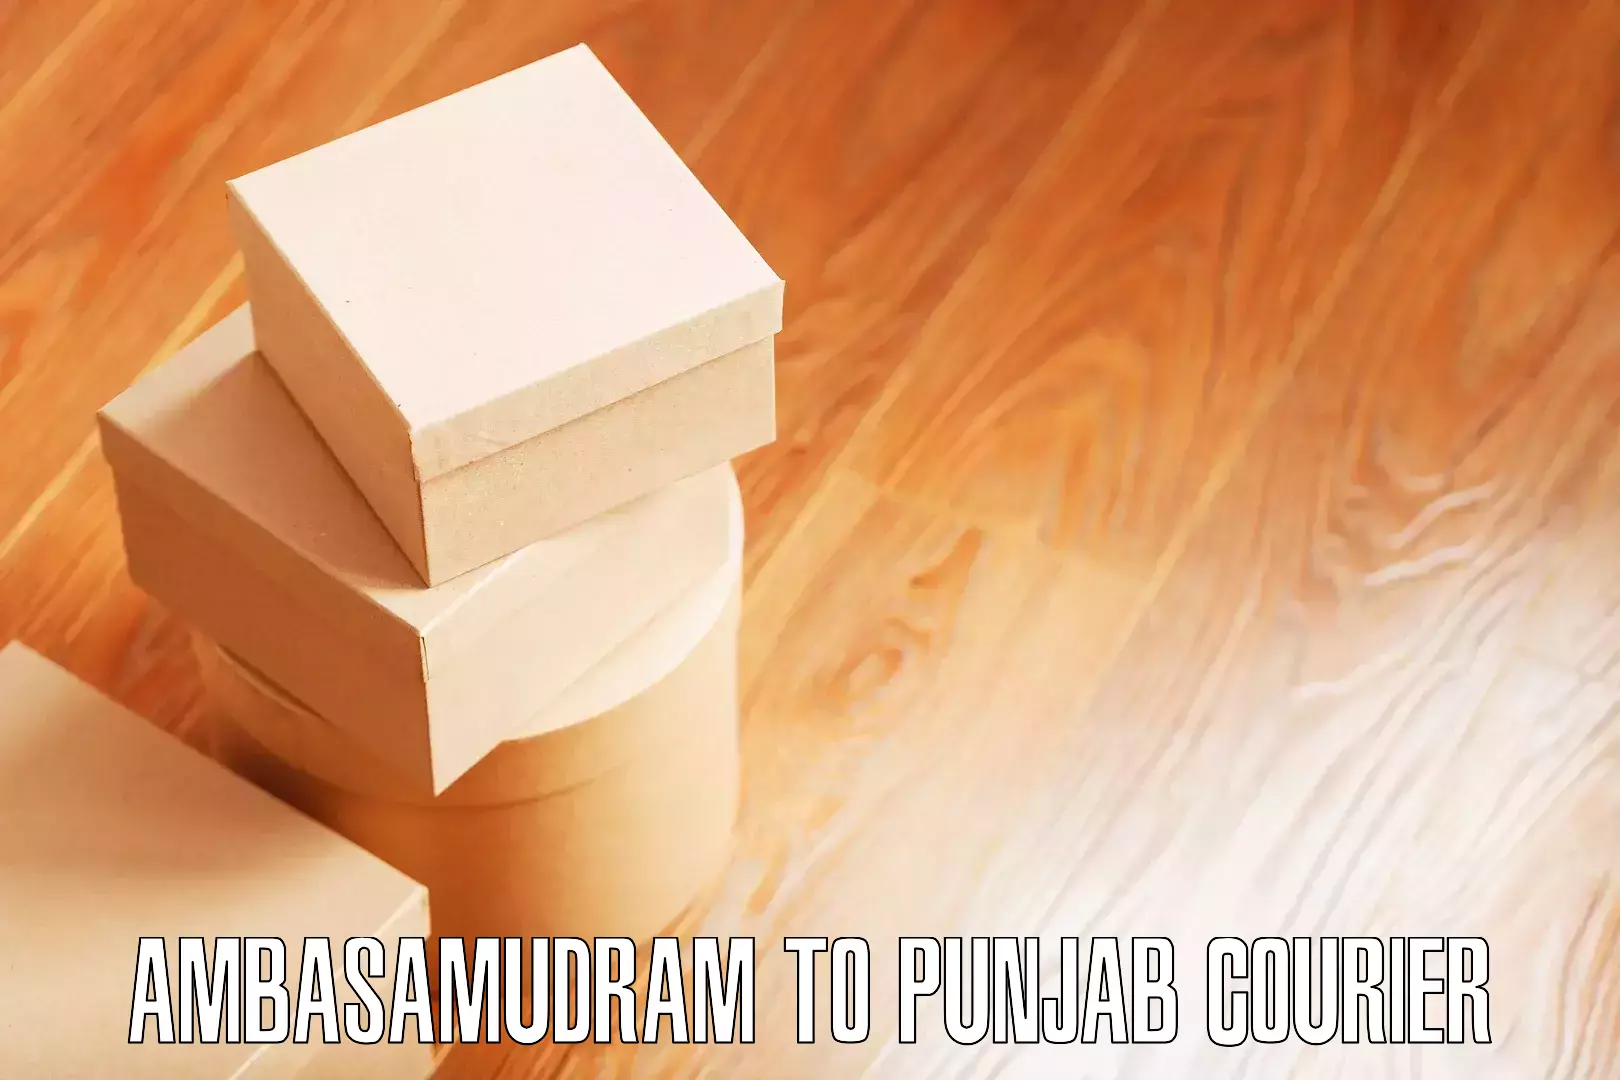 Skilled furniture movers Ambasamudram to Punjab